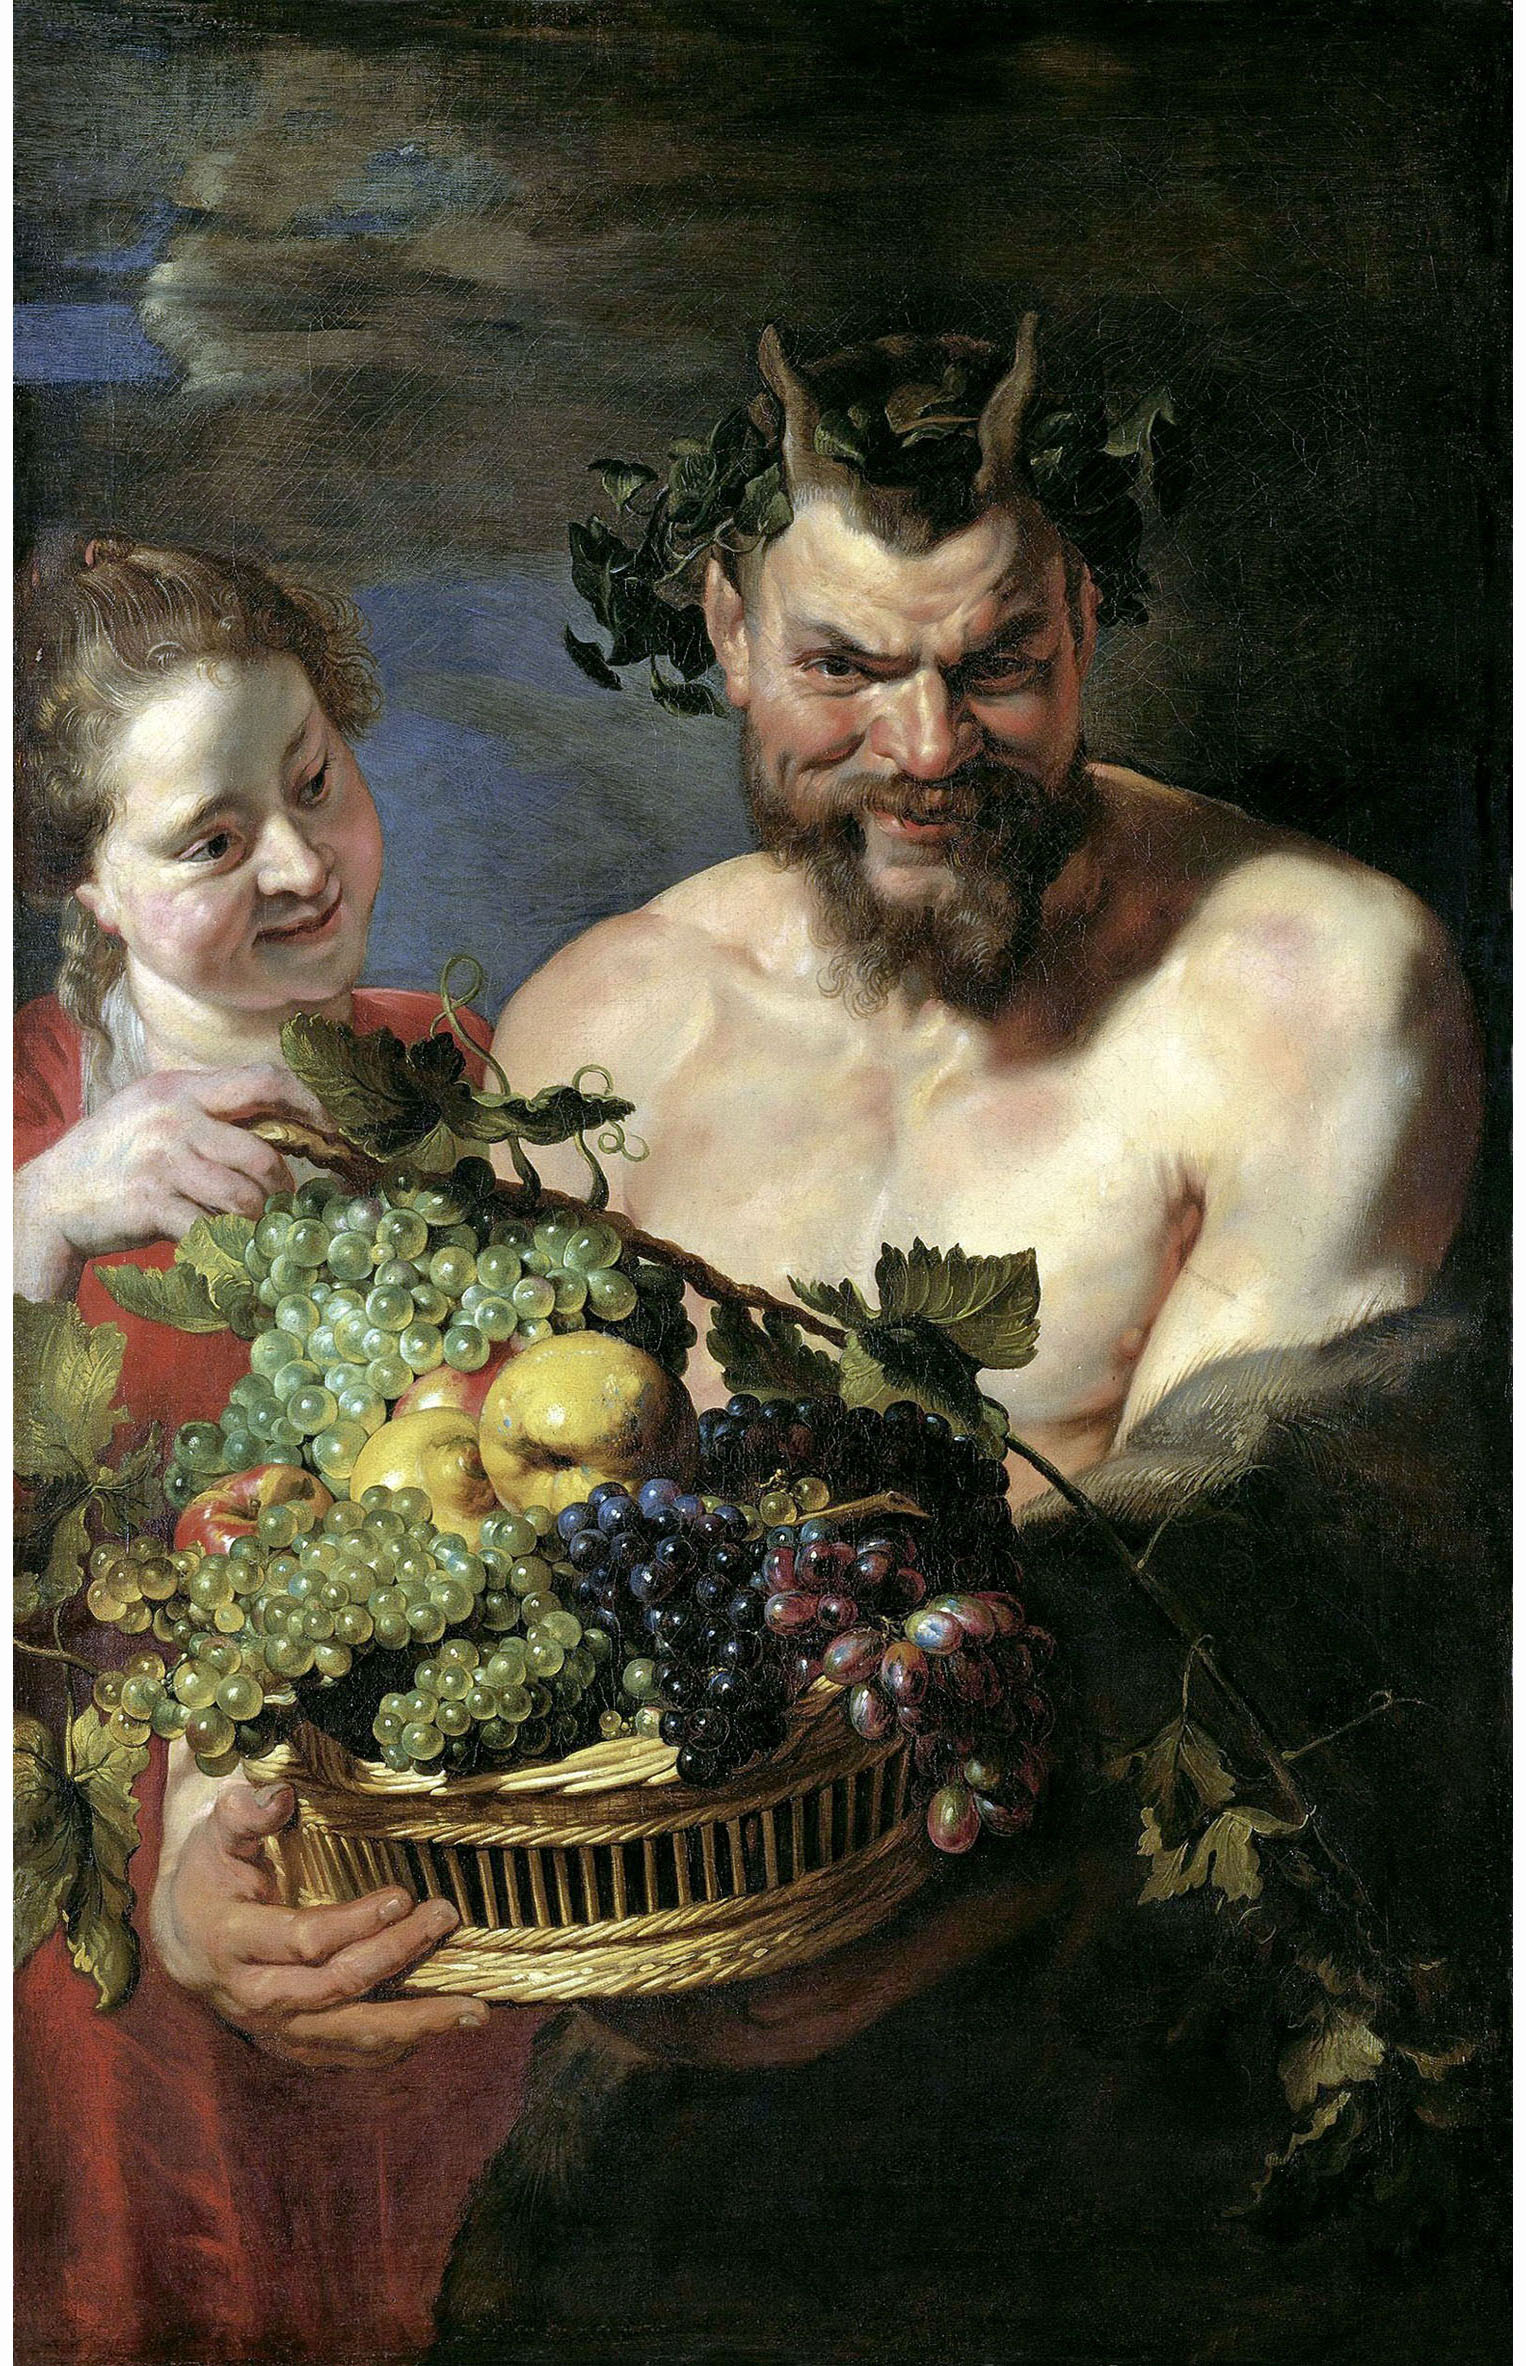 Питер Пауль Рубенс. "Сатир и женщина с корзиной фруктов". 1615. Музей Лихтенштейн, Вена.